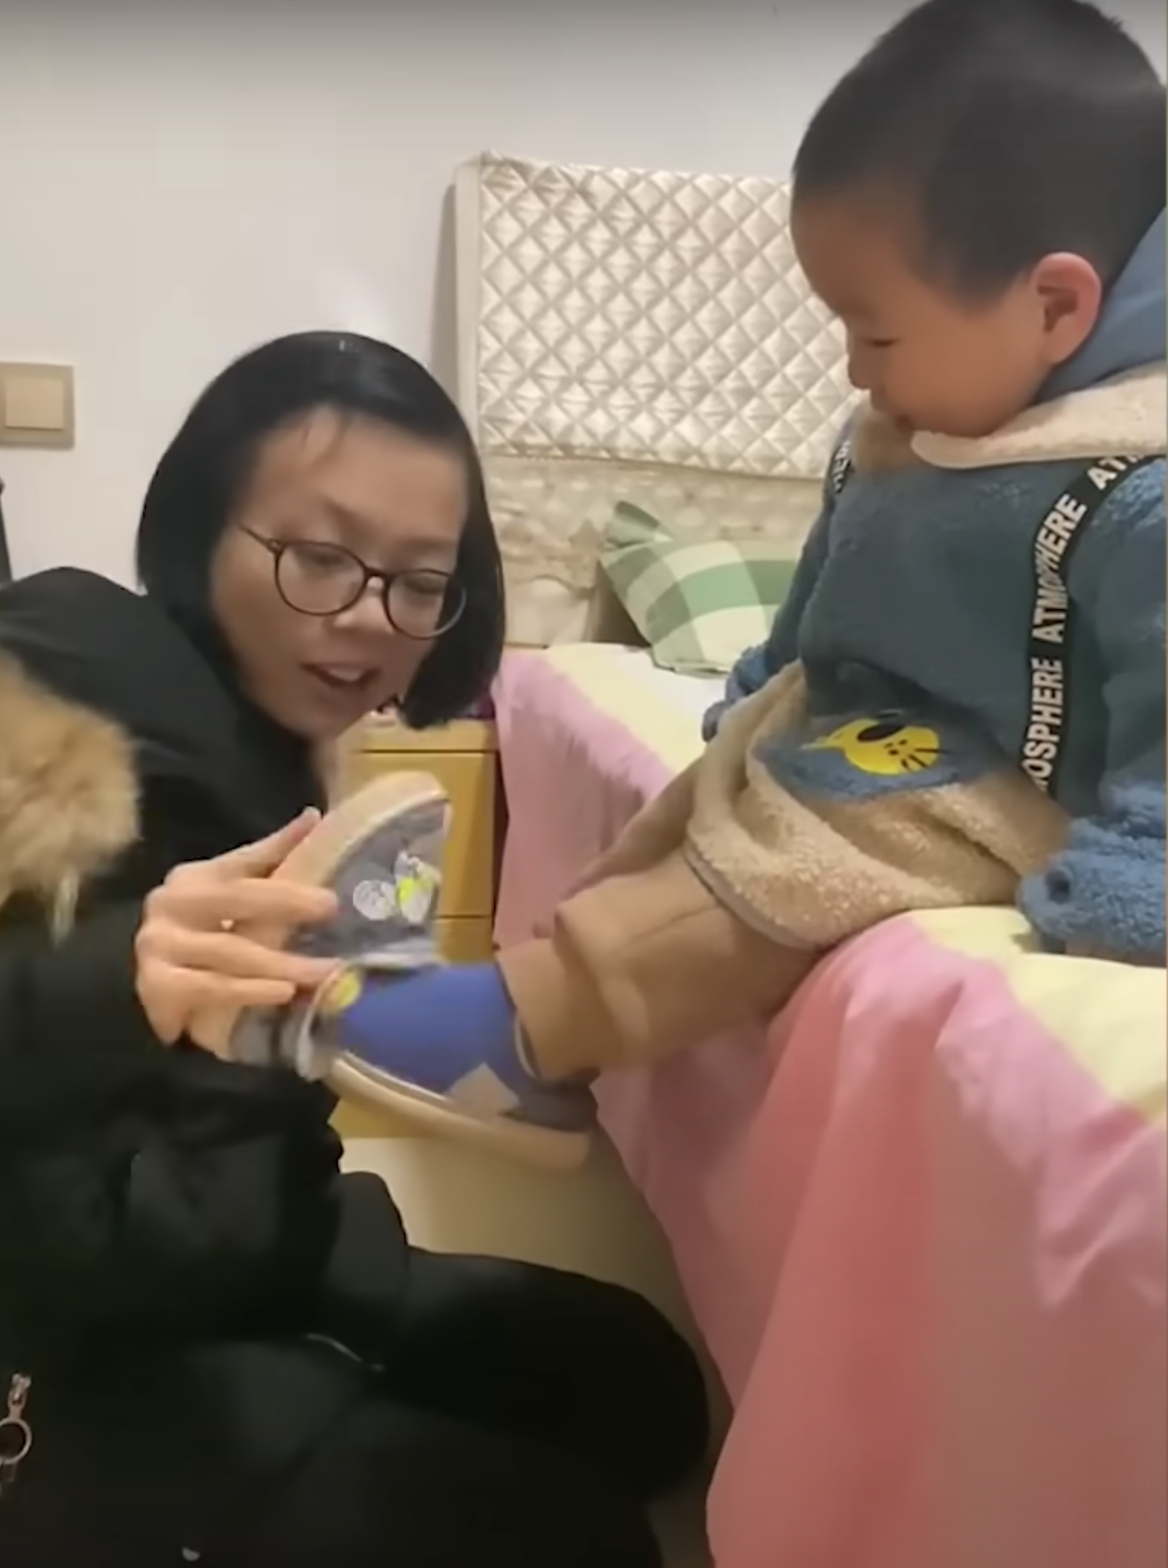 Wang versucht ihr Bestes, um für ihren Sohn zu sorgen. | Quelle: Youtube.com/South China Morning Post